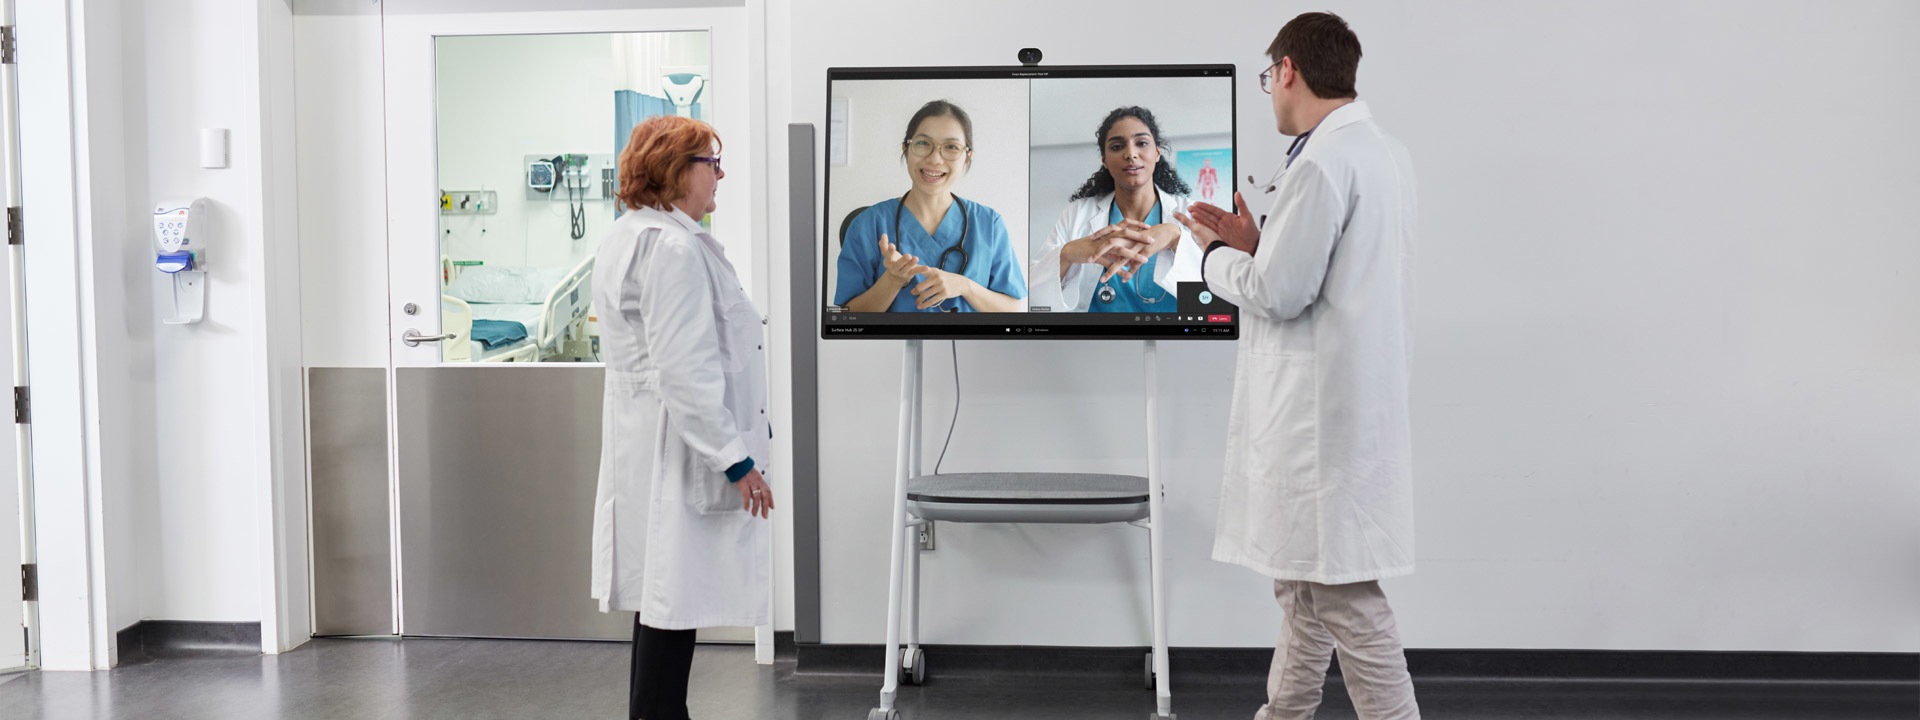 To medicinske fagpersoner deltager i et Teams-videoopkald i et hospitalsmiljø